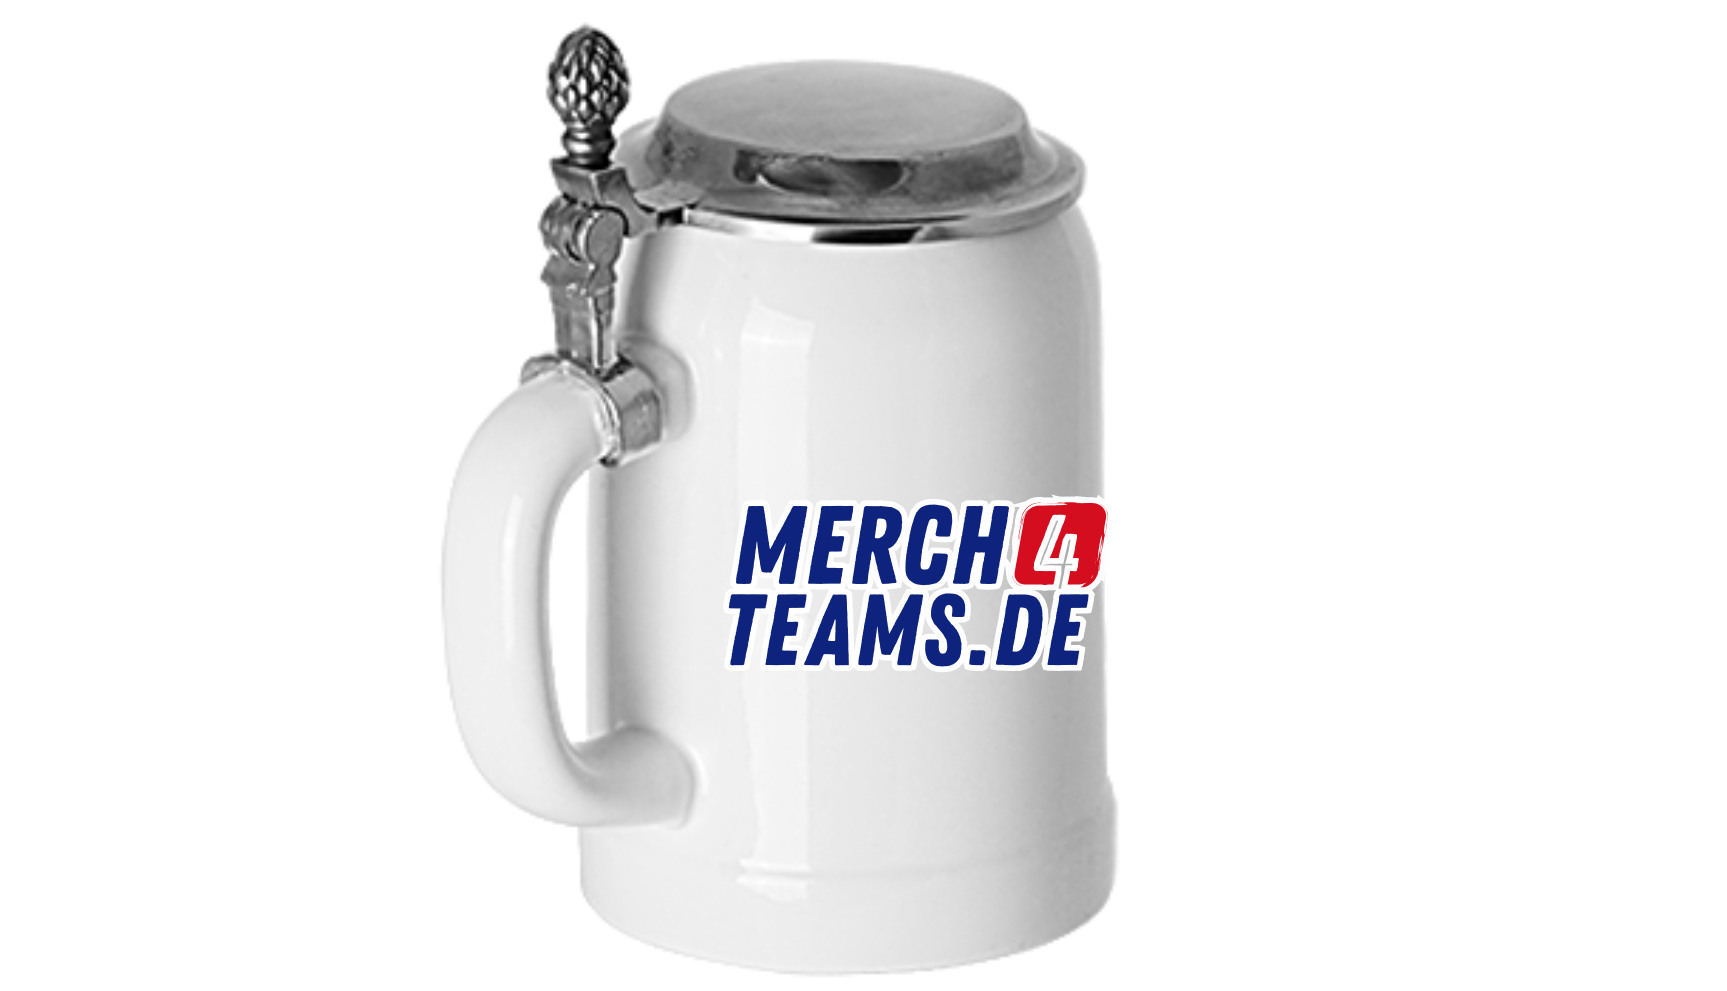 Der Merch4teams Bierkrug mit Zinndeckel   